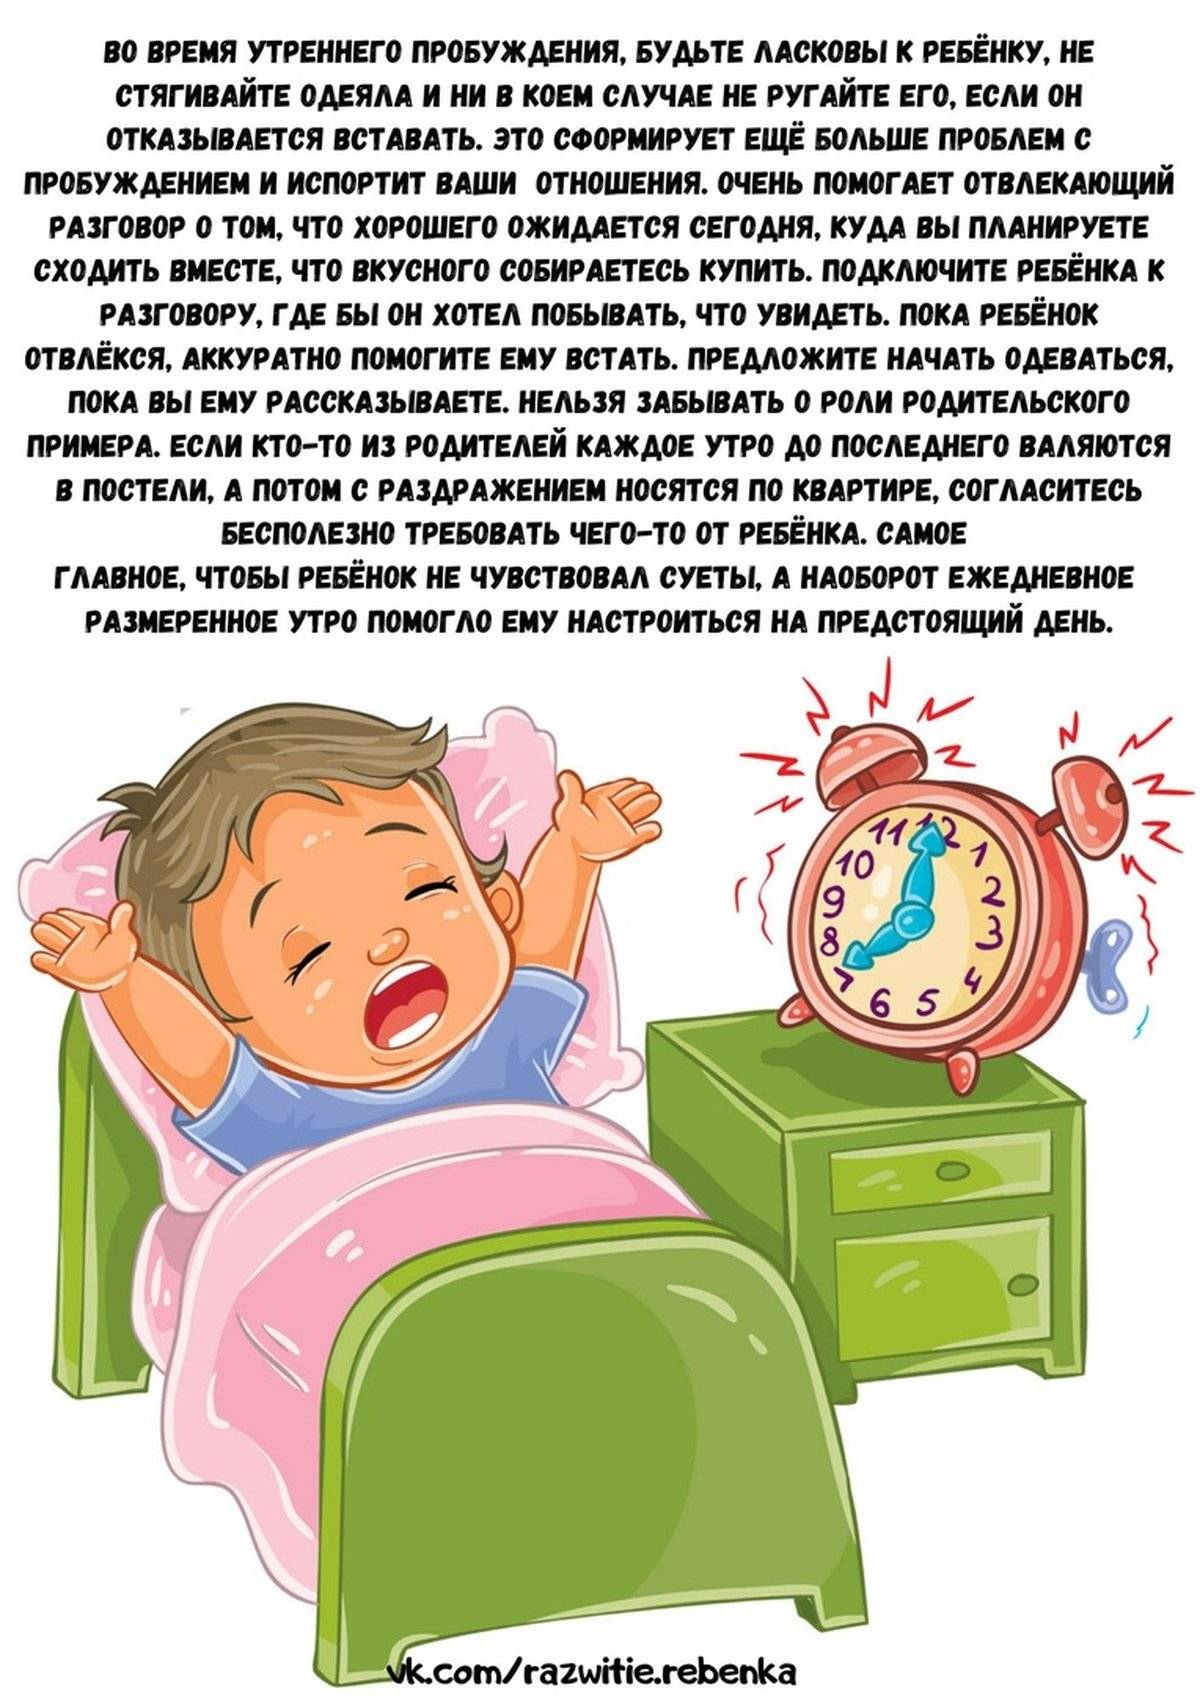 Как легко разбудить ребенка утром?forpost - здоровье |